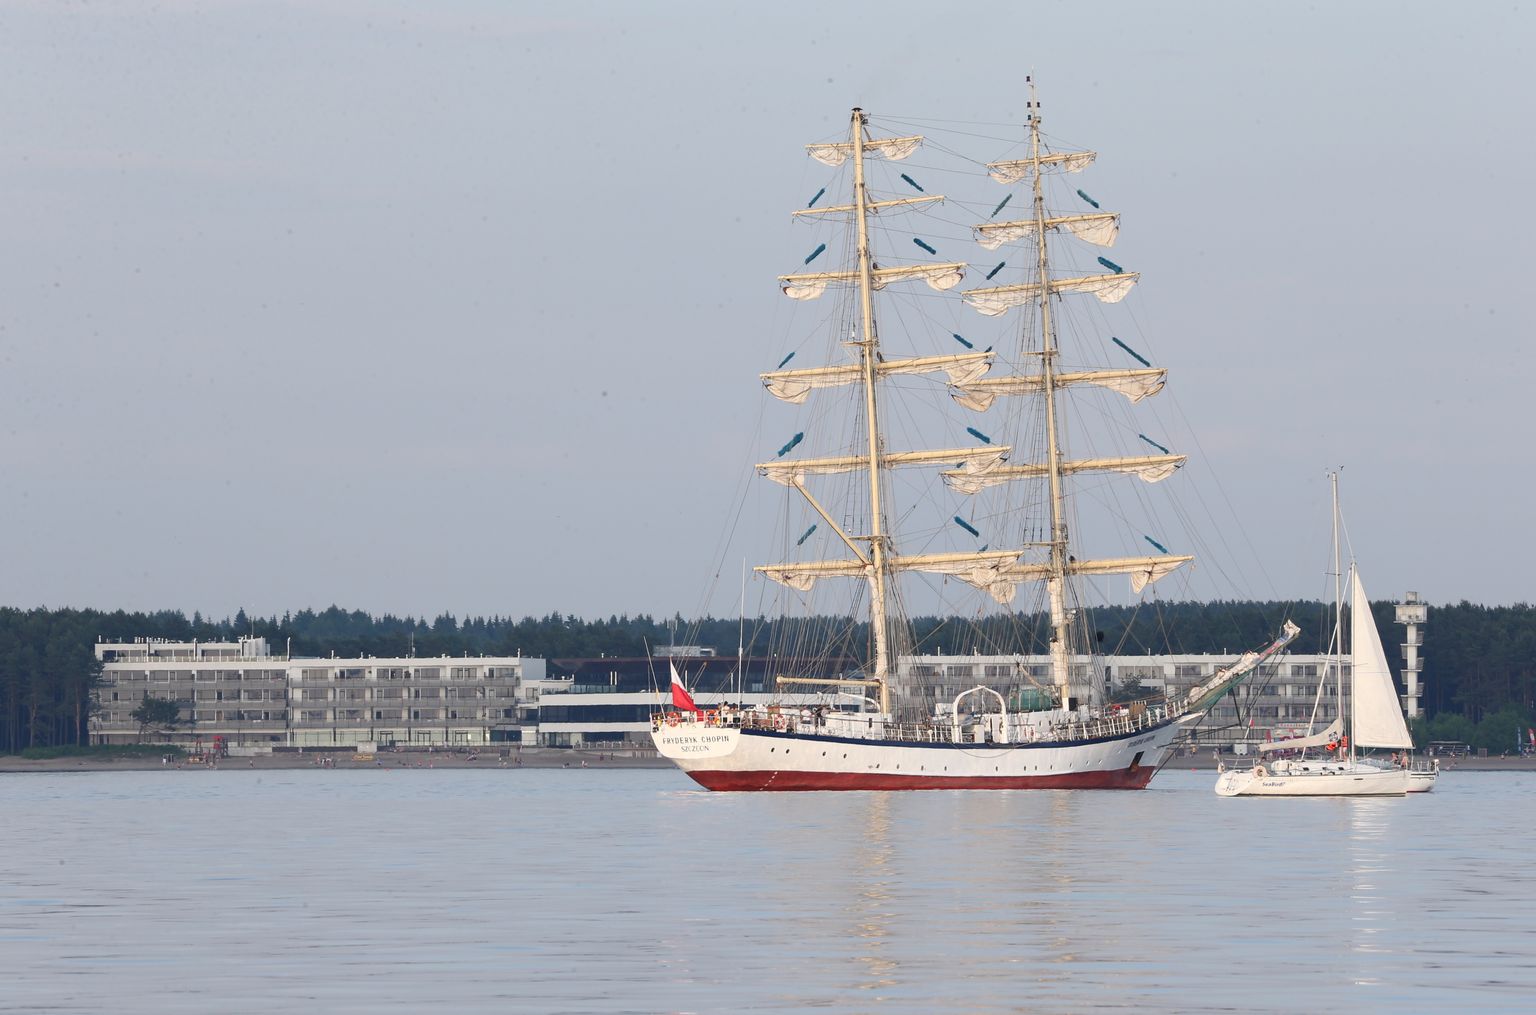 Üks pea kõigil viimase kümnendi Tall Ships Race üritusel osalenud õppepurjekatest on poolakate kahemastiline Fryderyk Chopin, mis külastas Tallinna ka 2013. aastal.